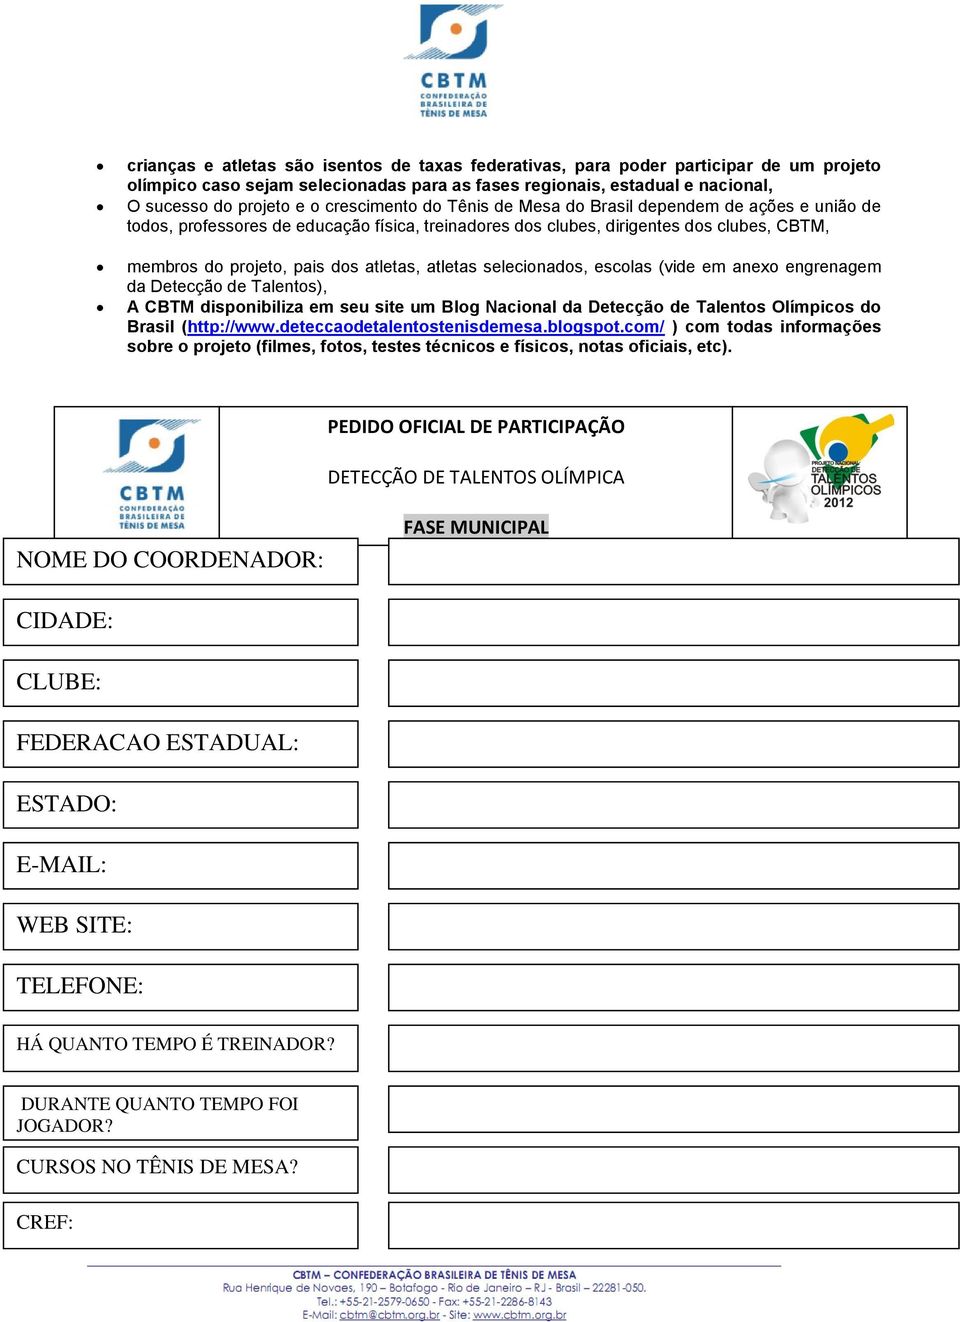 atletas selecionados, escolas (vide em anexo engrenagem da Detecção de Talentos), A CBTM disponibiliza em seu site um Blog Nacional da Detecção de Talentos Olímpicos do Brasil (http://www.